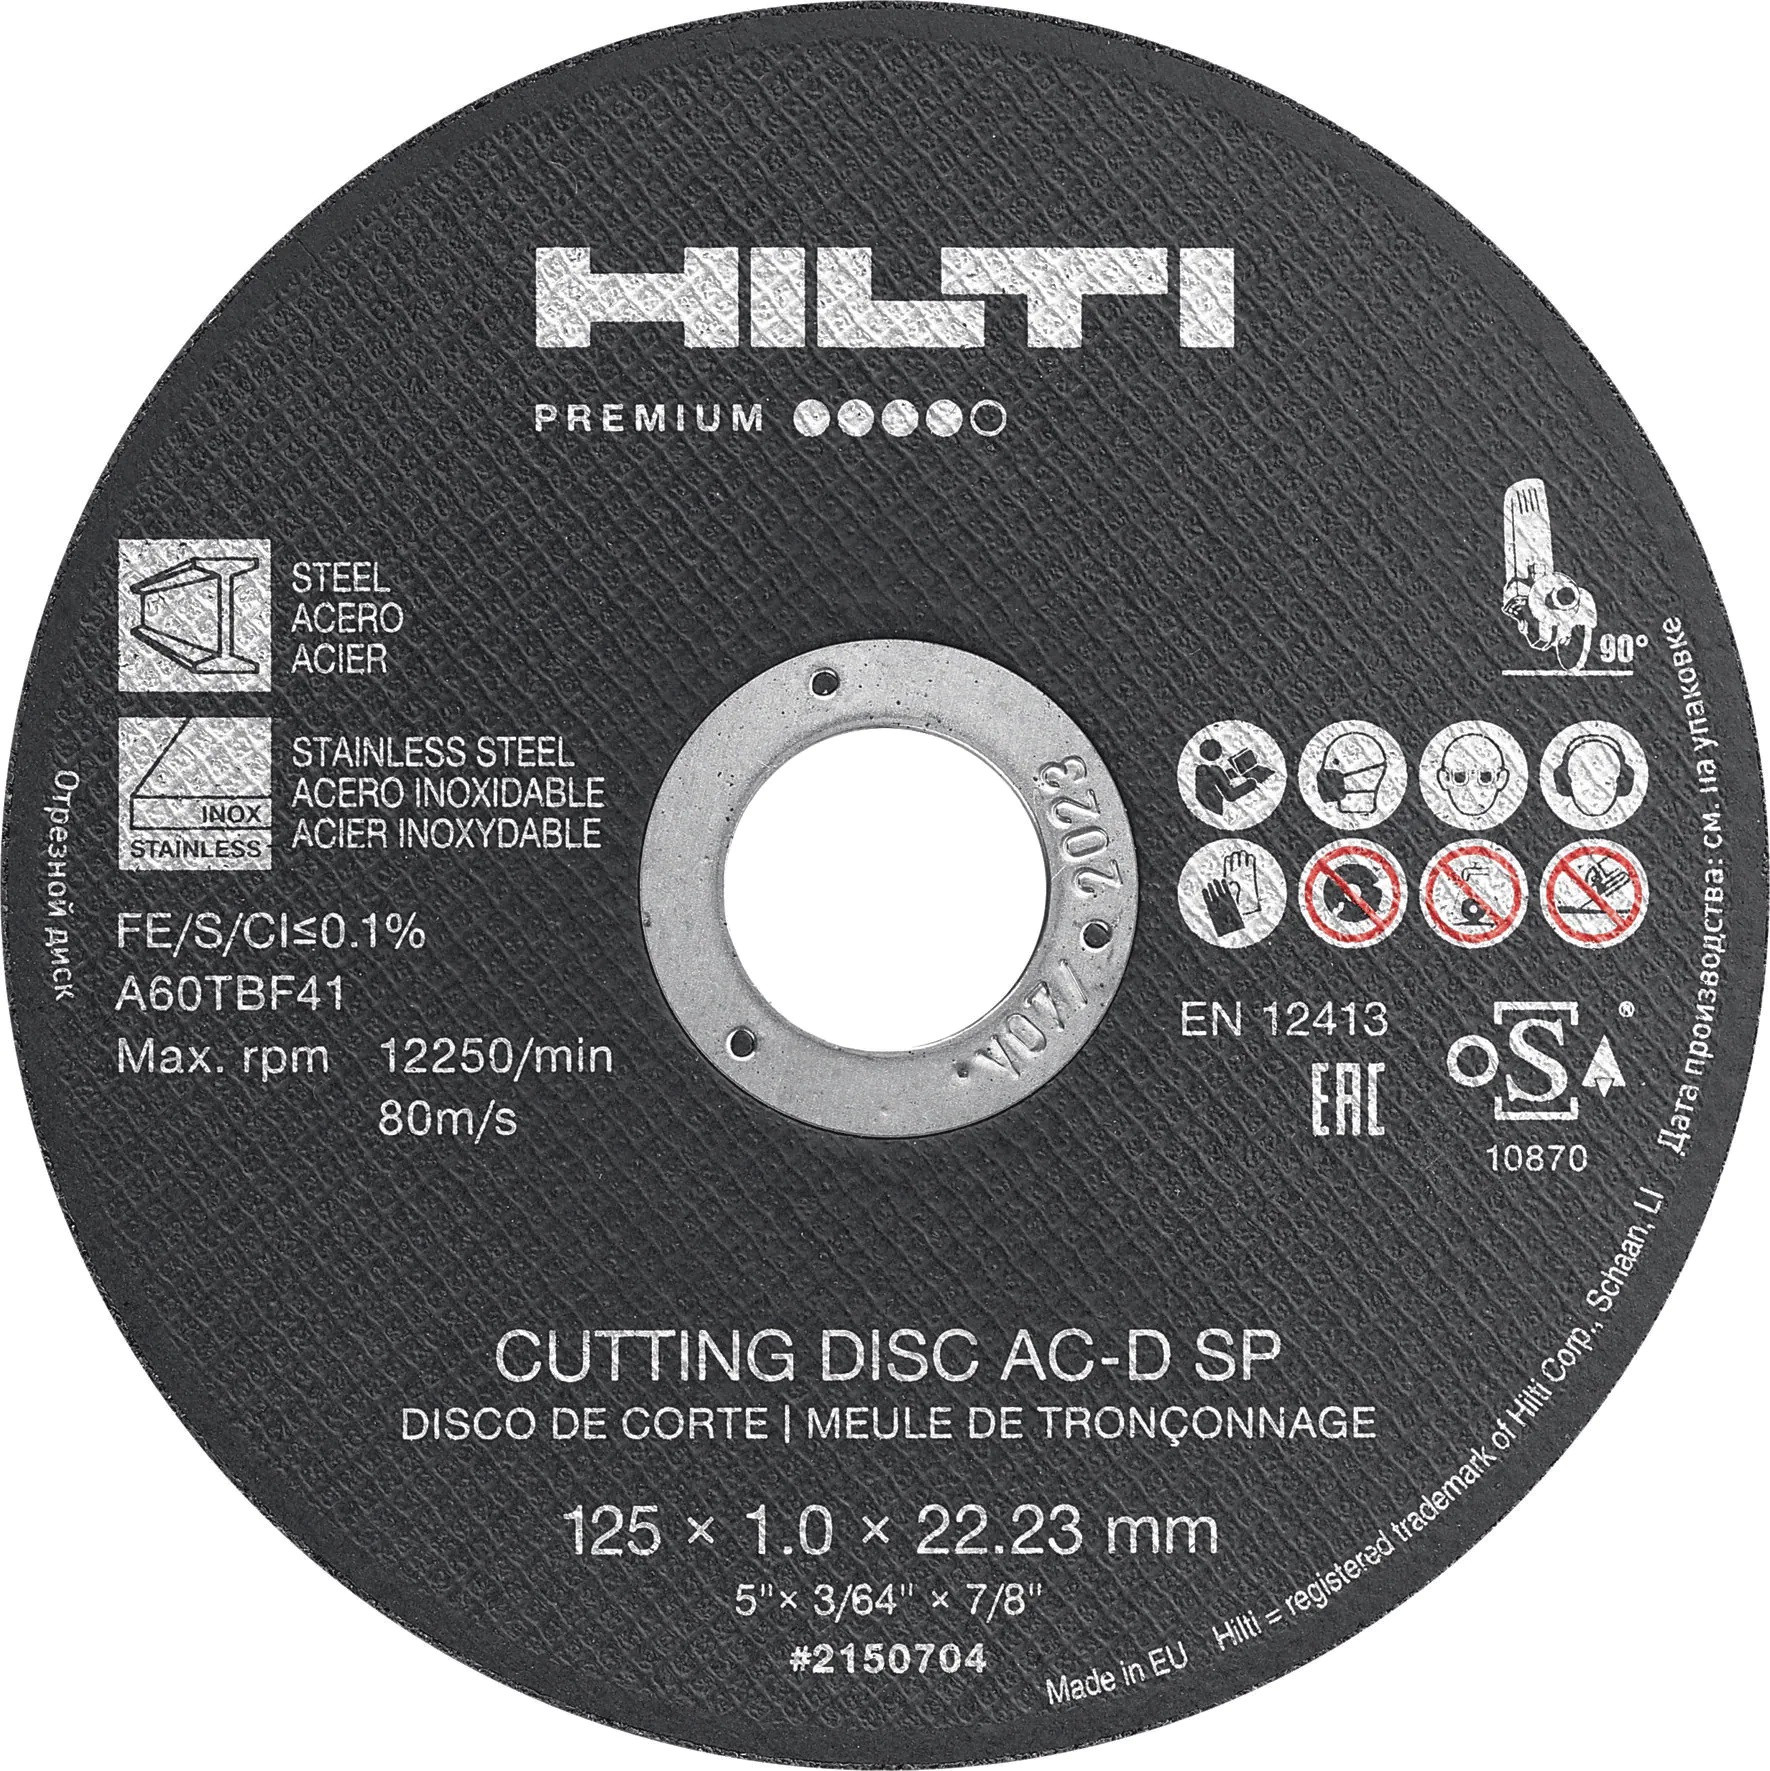 Купить Диск отрезной Hilti Premium 2075165 AC-D 230 SP 2,5 мм 25 шт